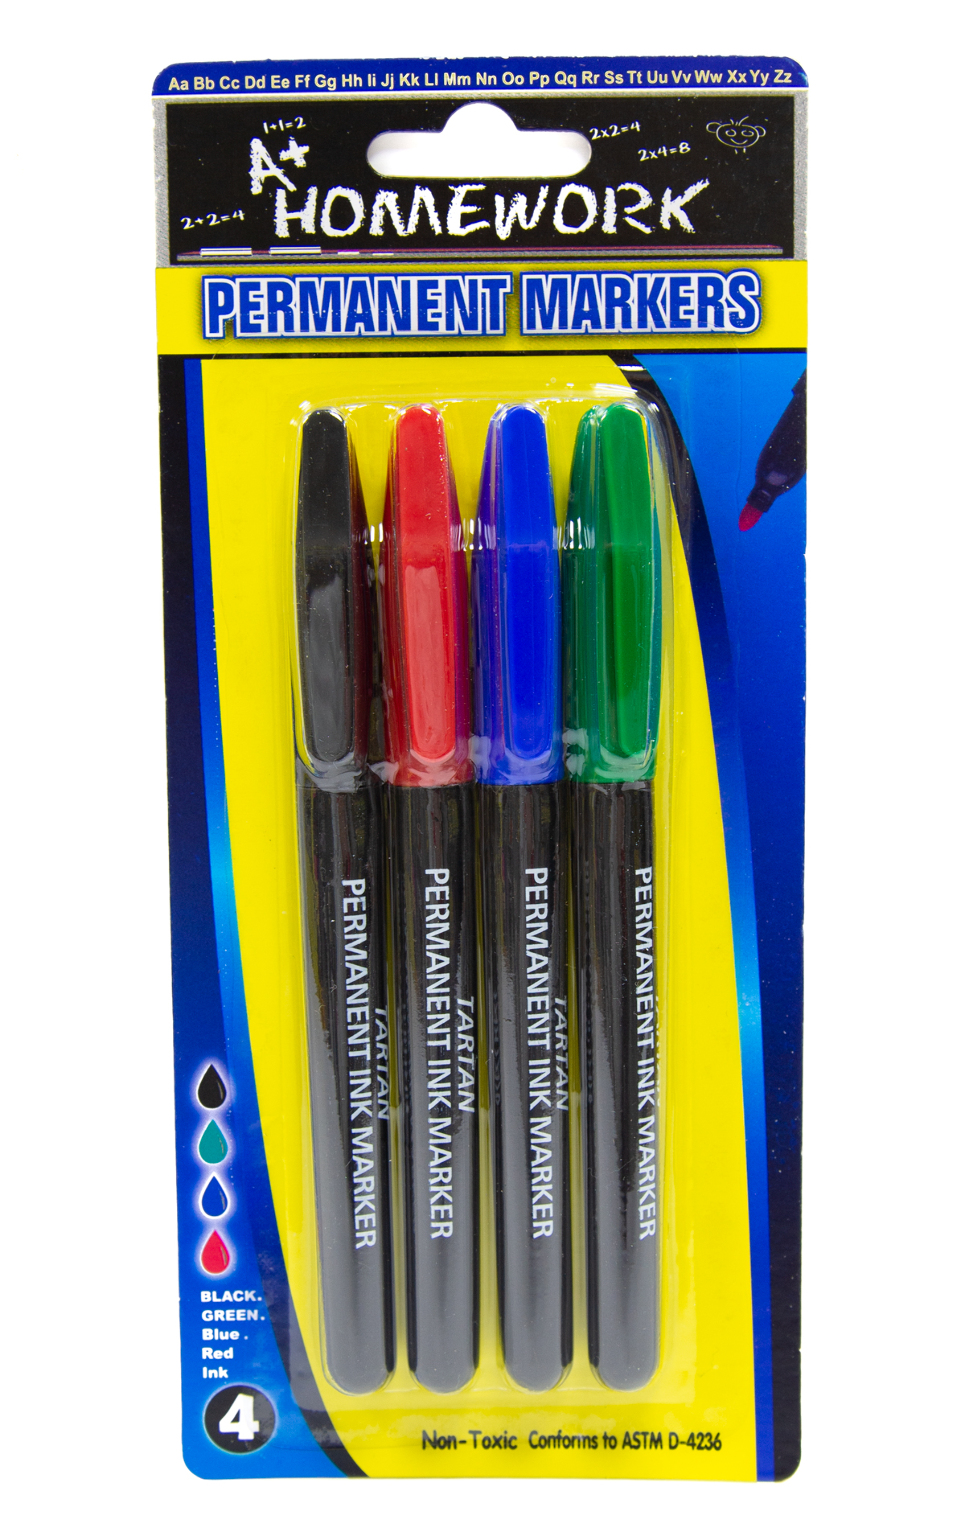 Bazic Permanent Marker Fine Black 8 PC